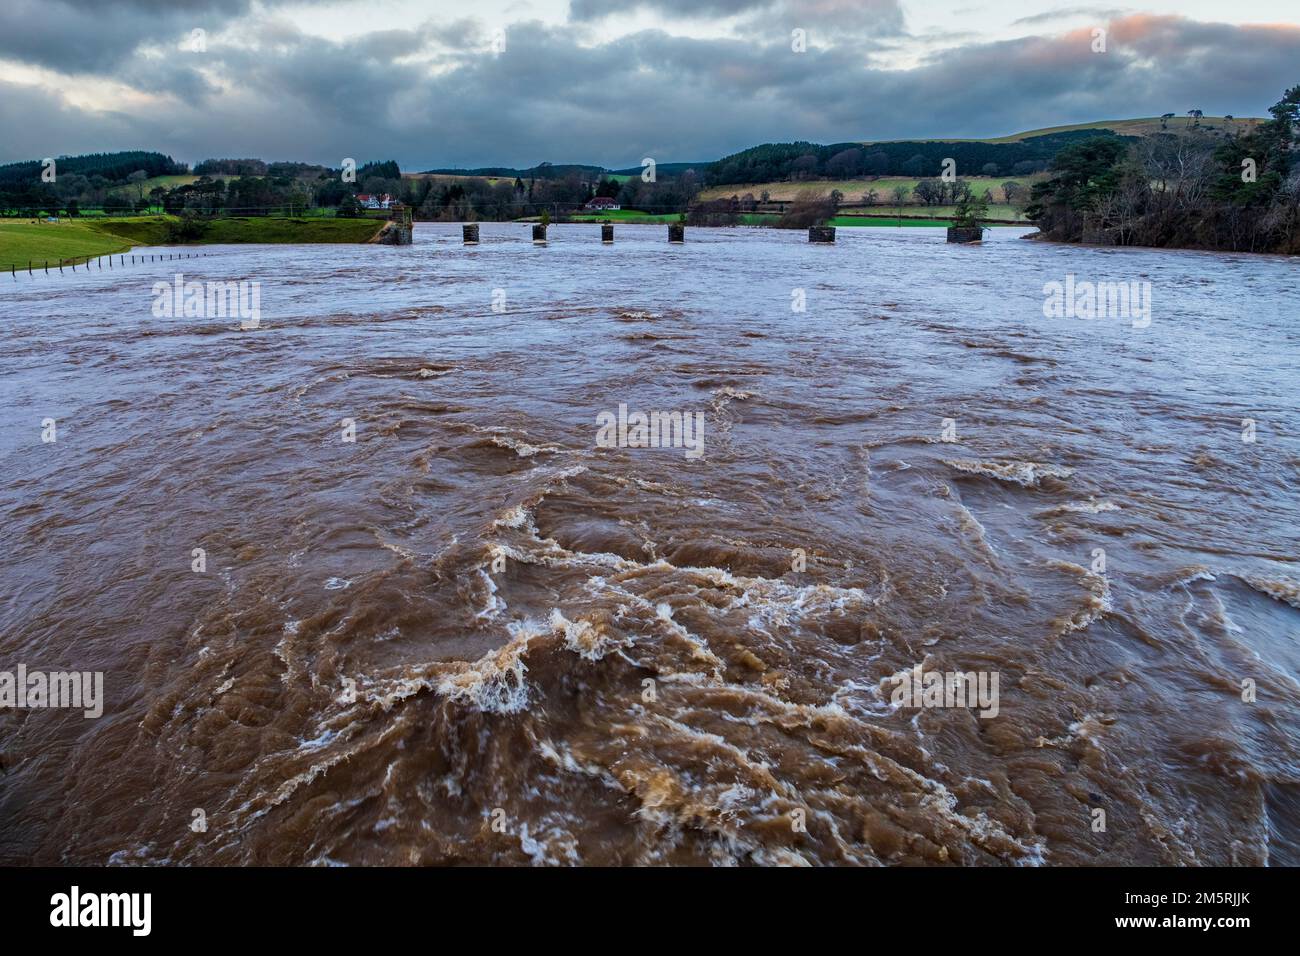 La rivière Clyde inondée dans le sud du Lanarkshire, en Écosse, après des jours de fortes pluies Banque D'Images